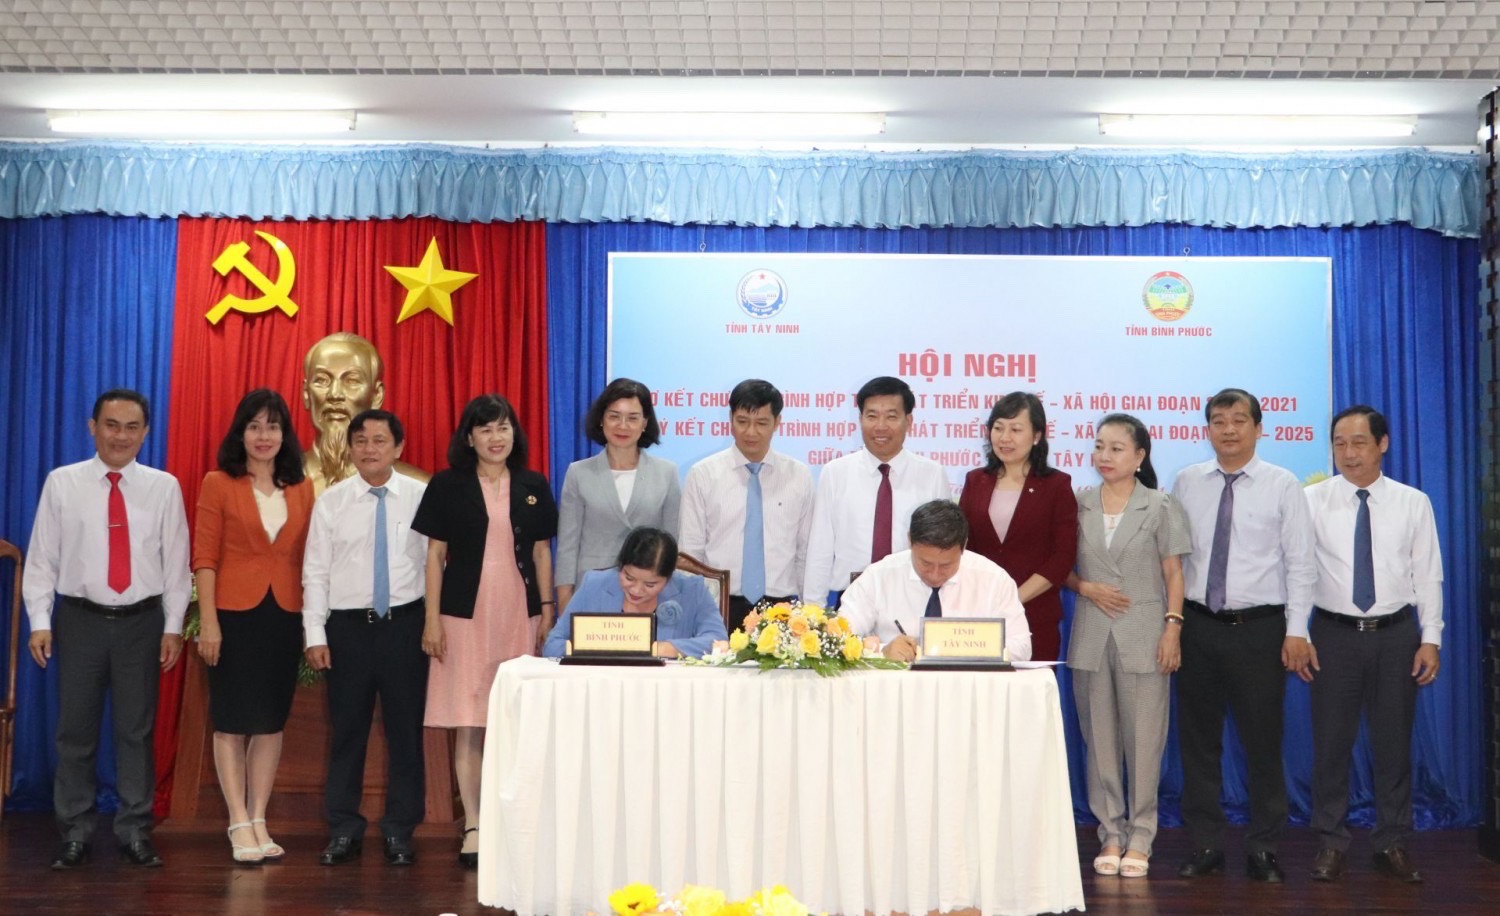 Chủ tịch UBND tỉnh Tây Ninh và Bình Phước ký kết Chương trình hợp tác phát triển kinh tế - xã hội giai đoạn 2022-2025.